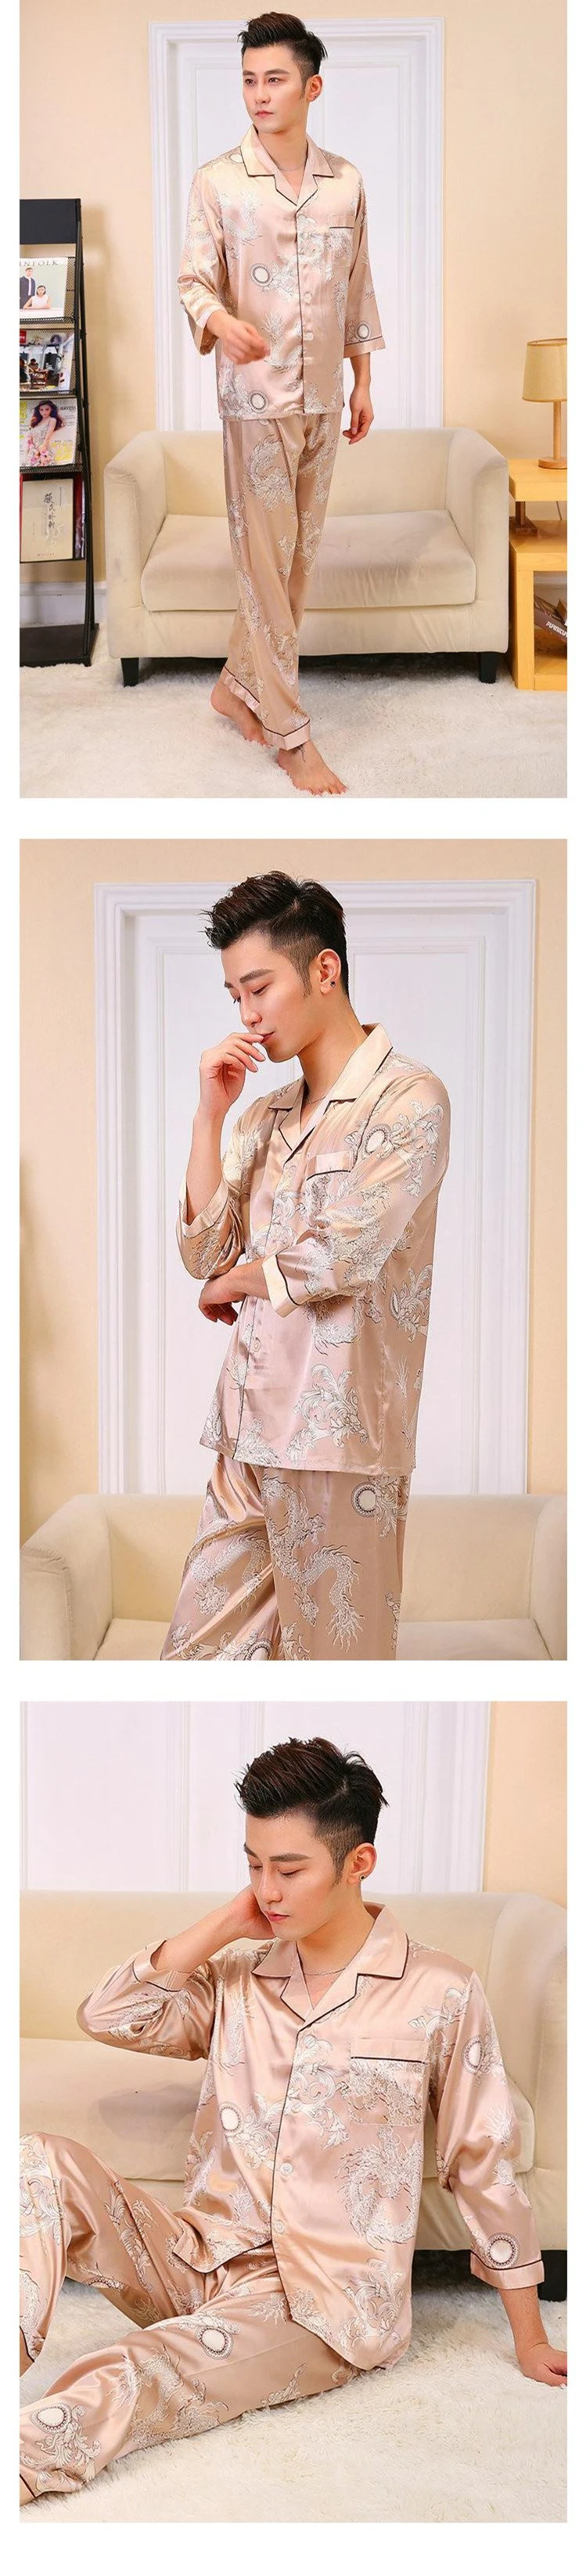 Мужской комплект из 2 предметов: Рубашка с длинными рукавами и штаны, пижамы, повседневная одежда для сна, стильный принт в китайском стиле, пижамный комплект с драконом, халат, L, XL, XXL